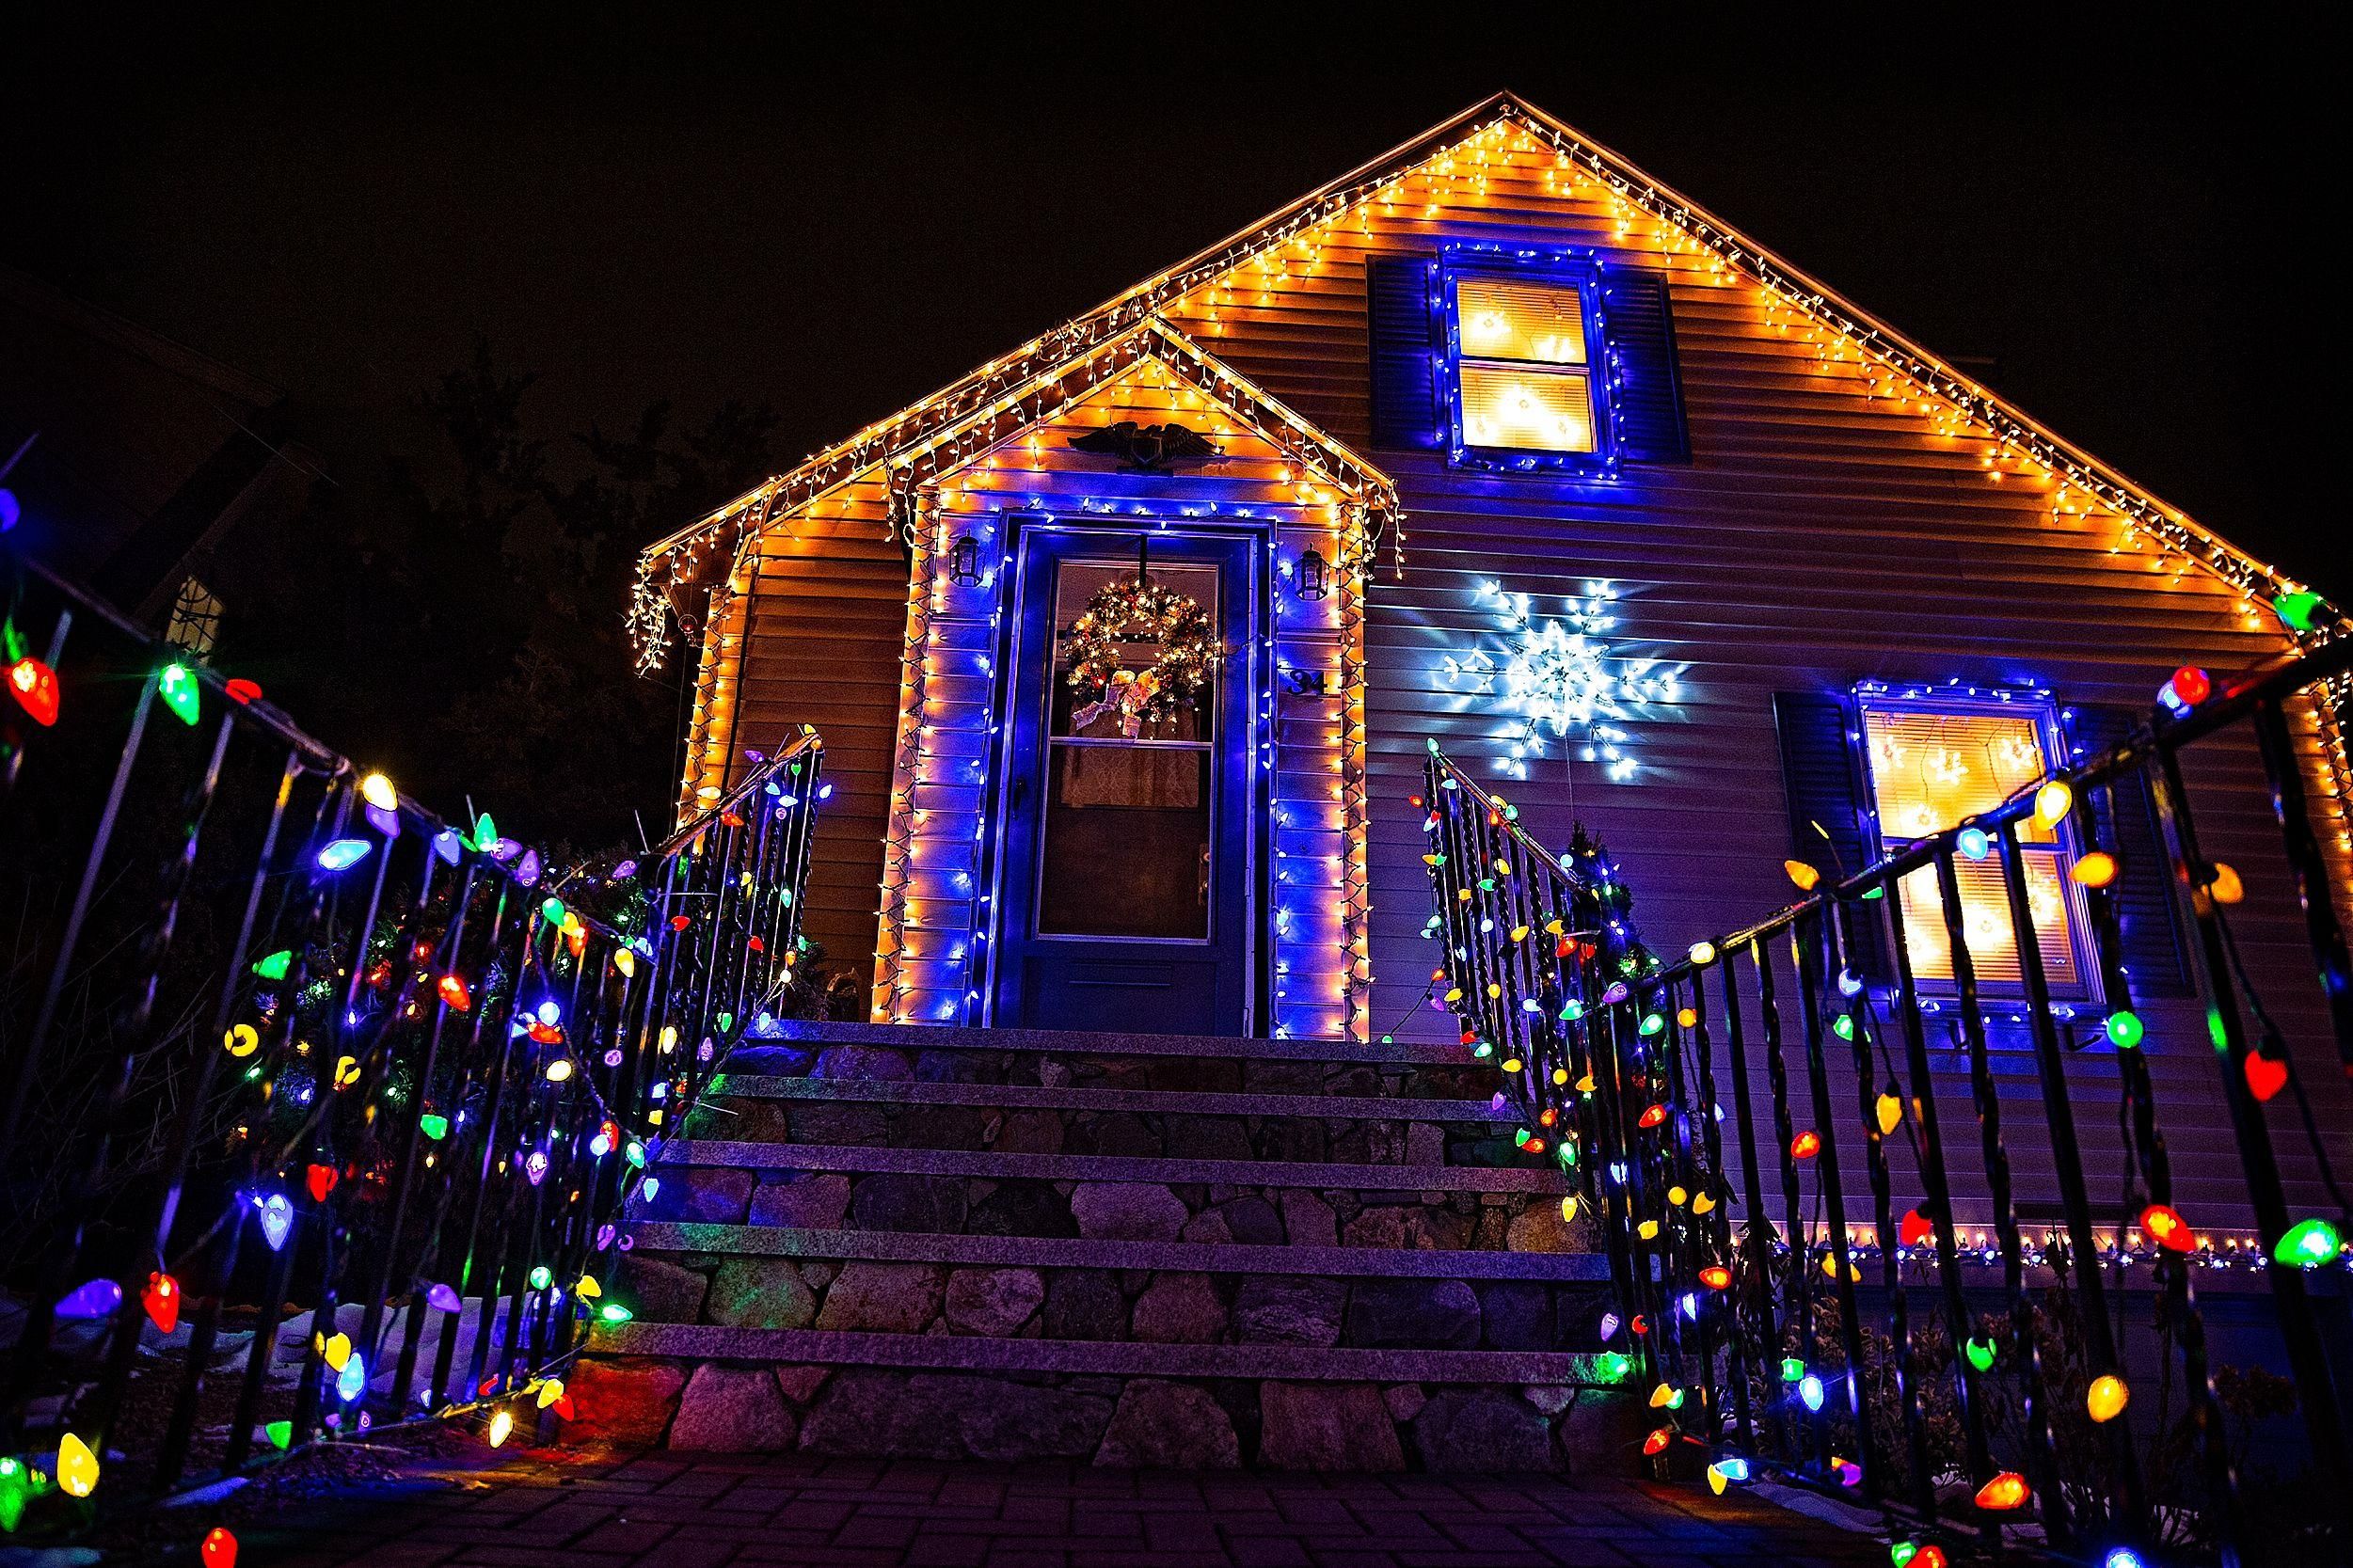 Eclairage de Noël : comment illuminer le jardin et la maison